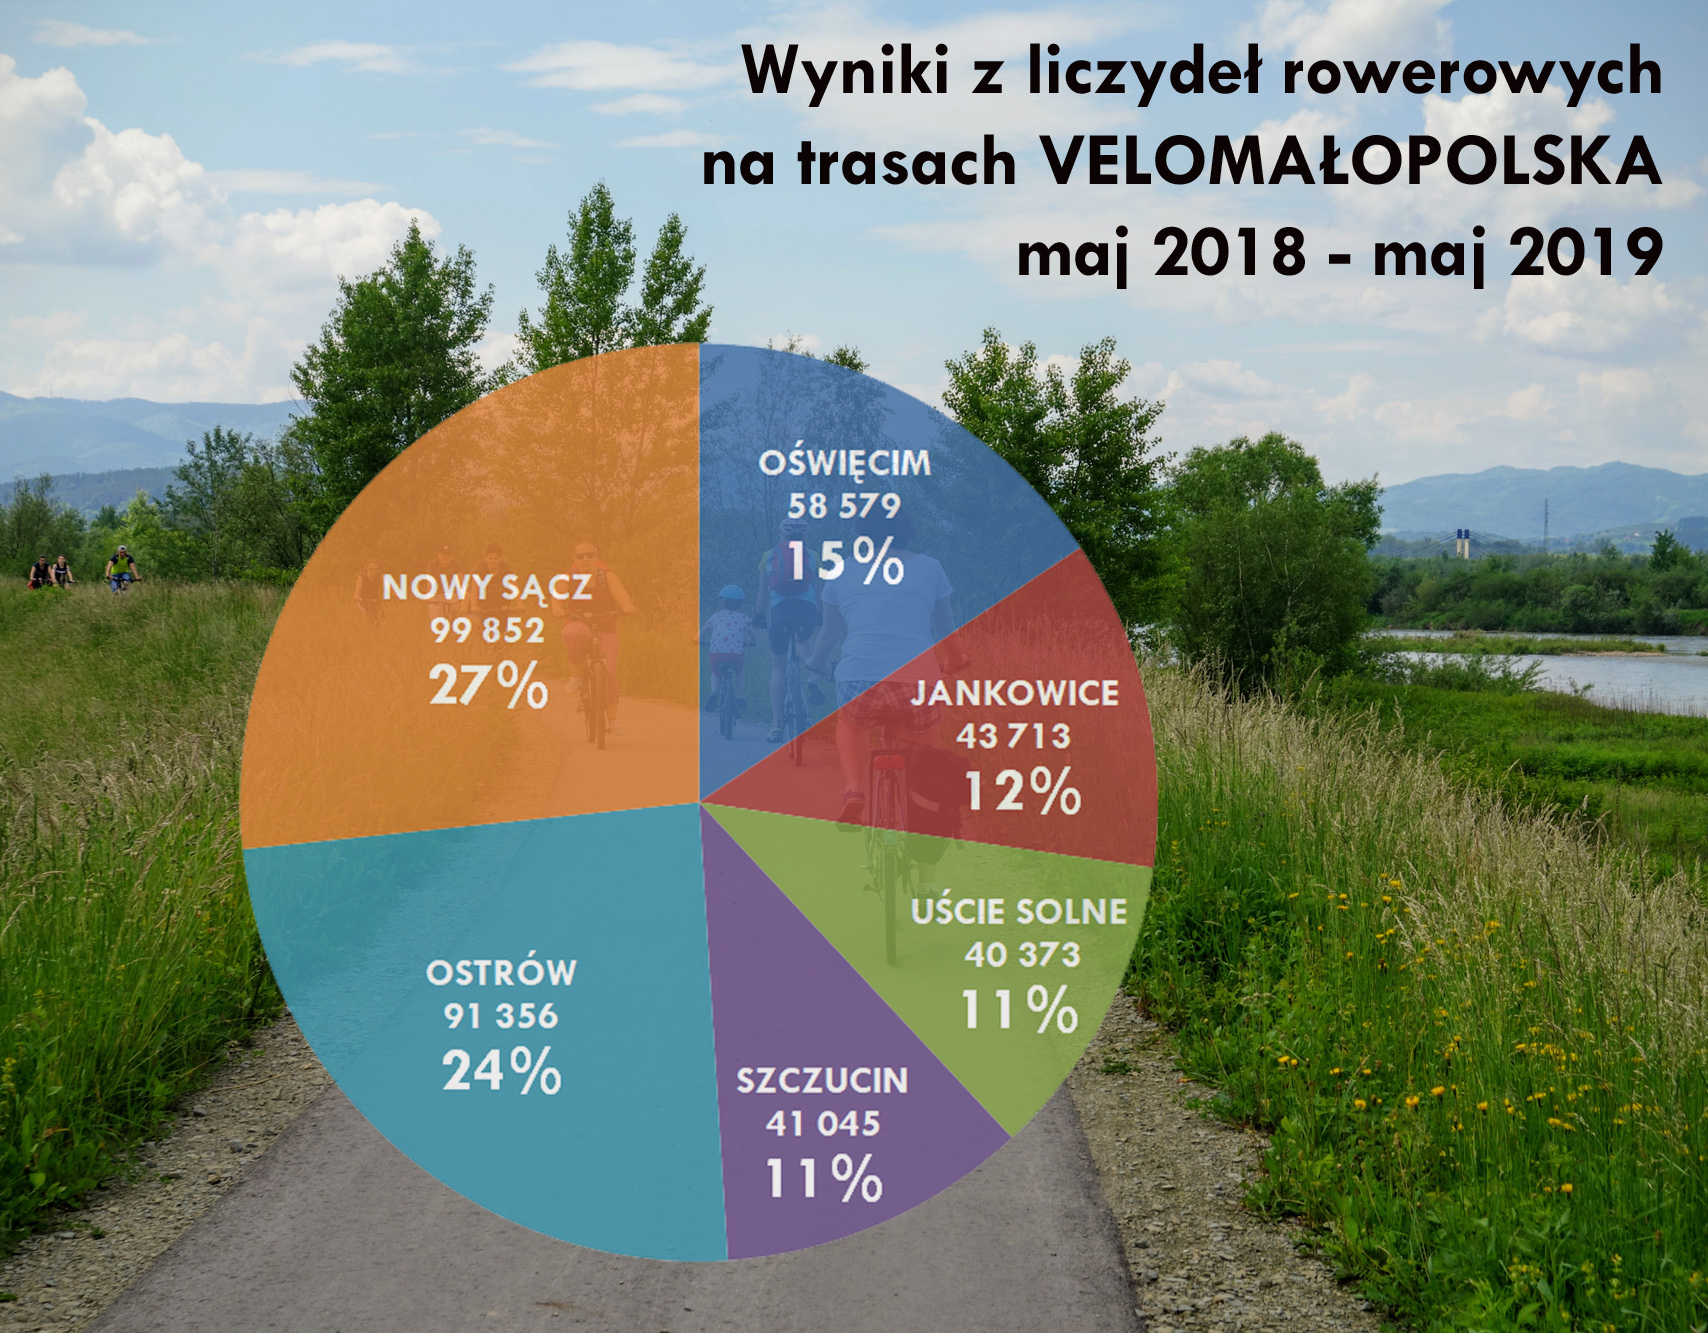 Statystyki z liczydeł rowerowych na trasach VeloMałopolska